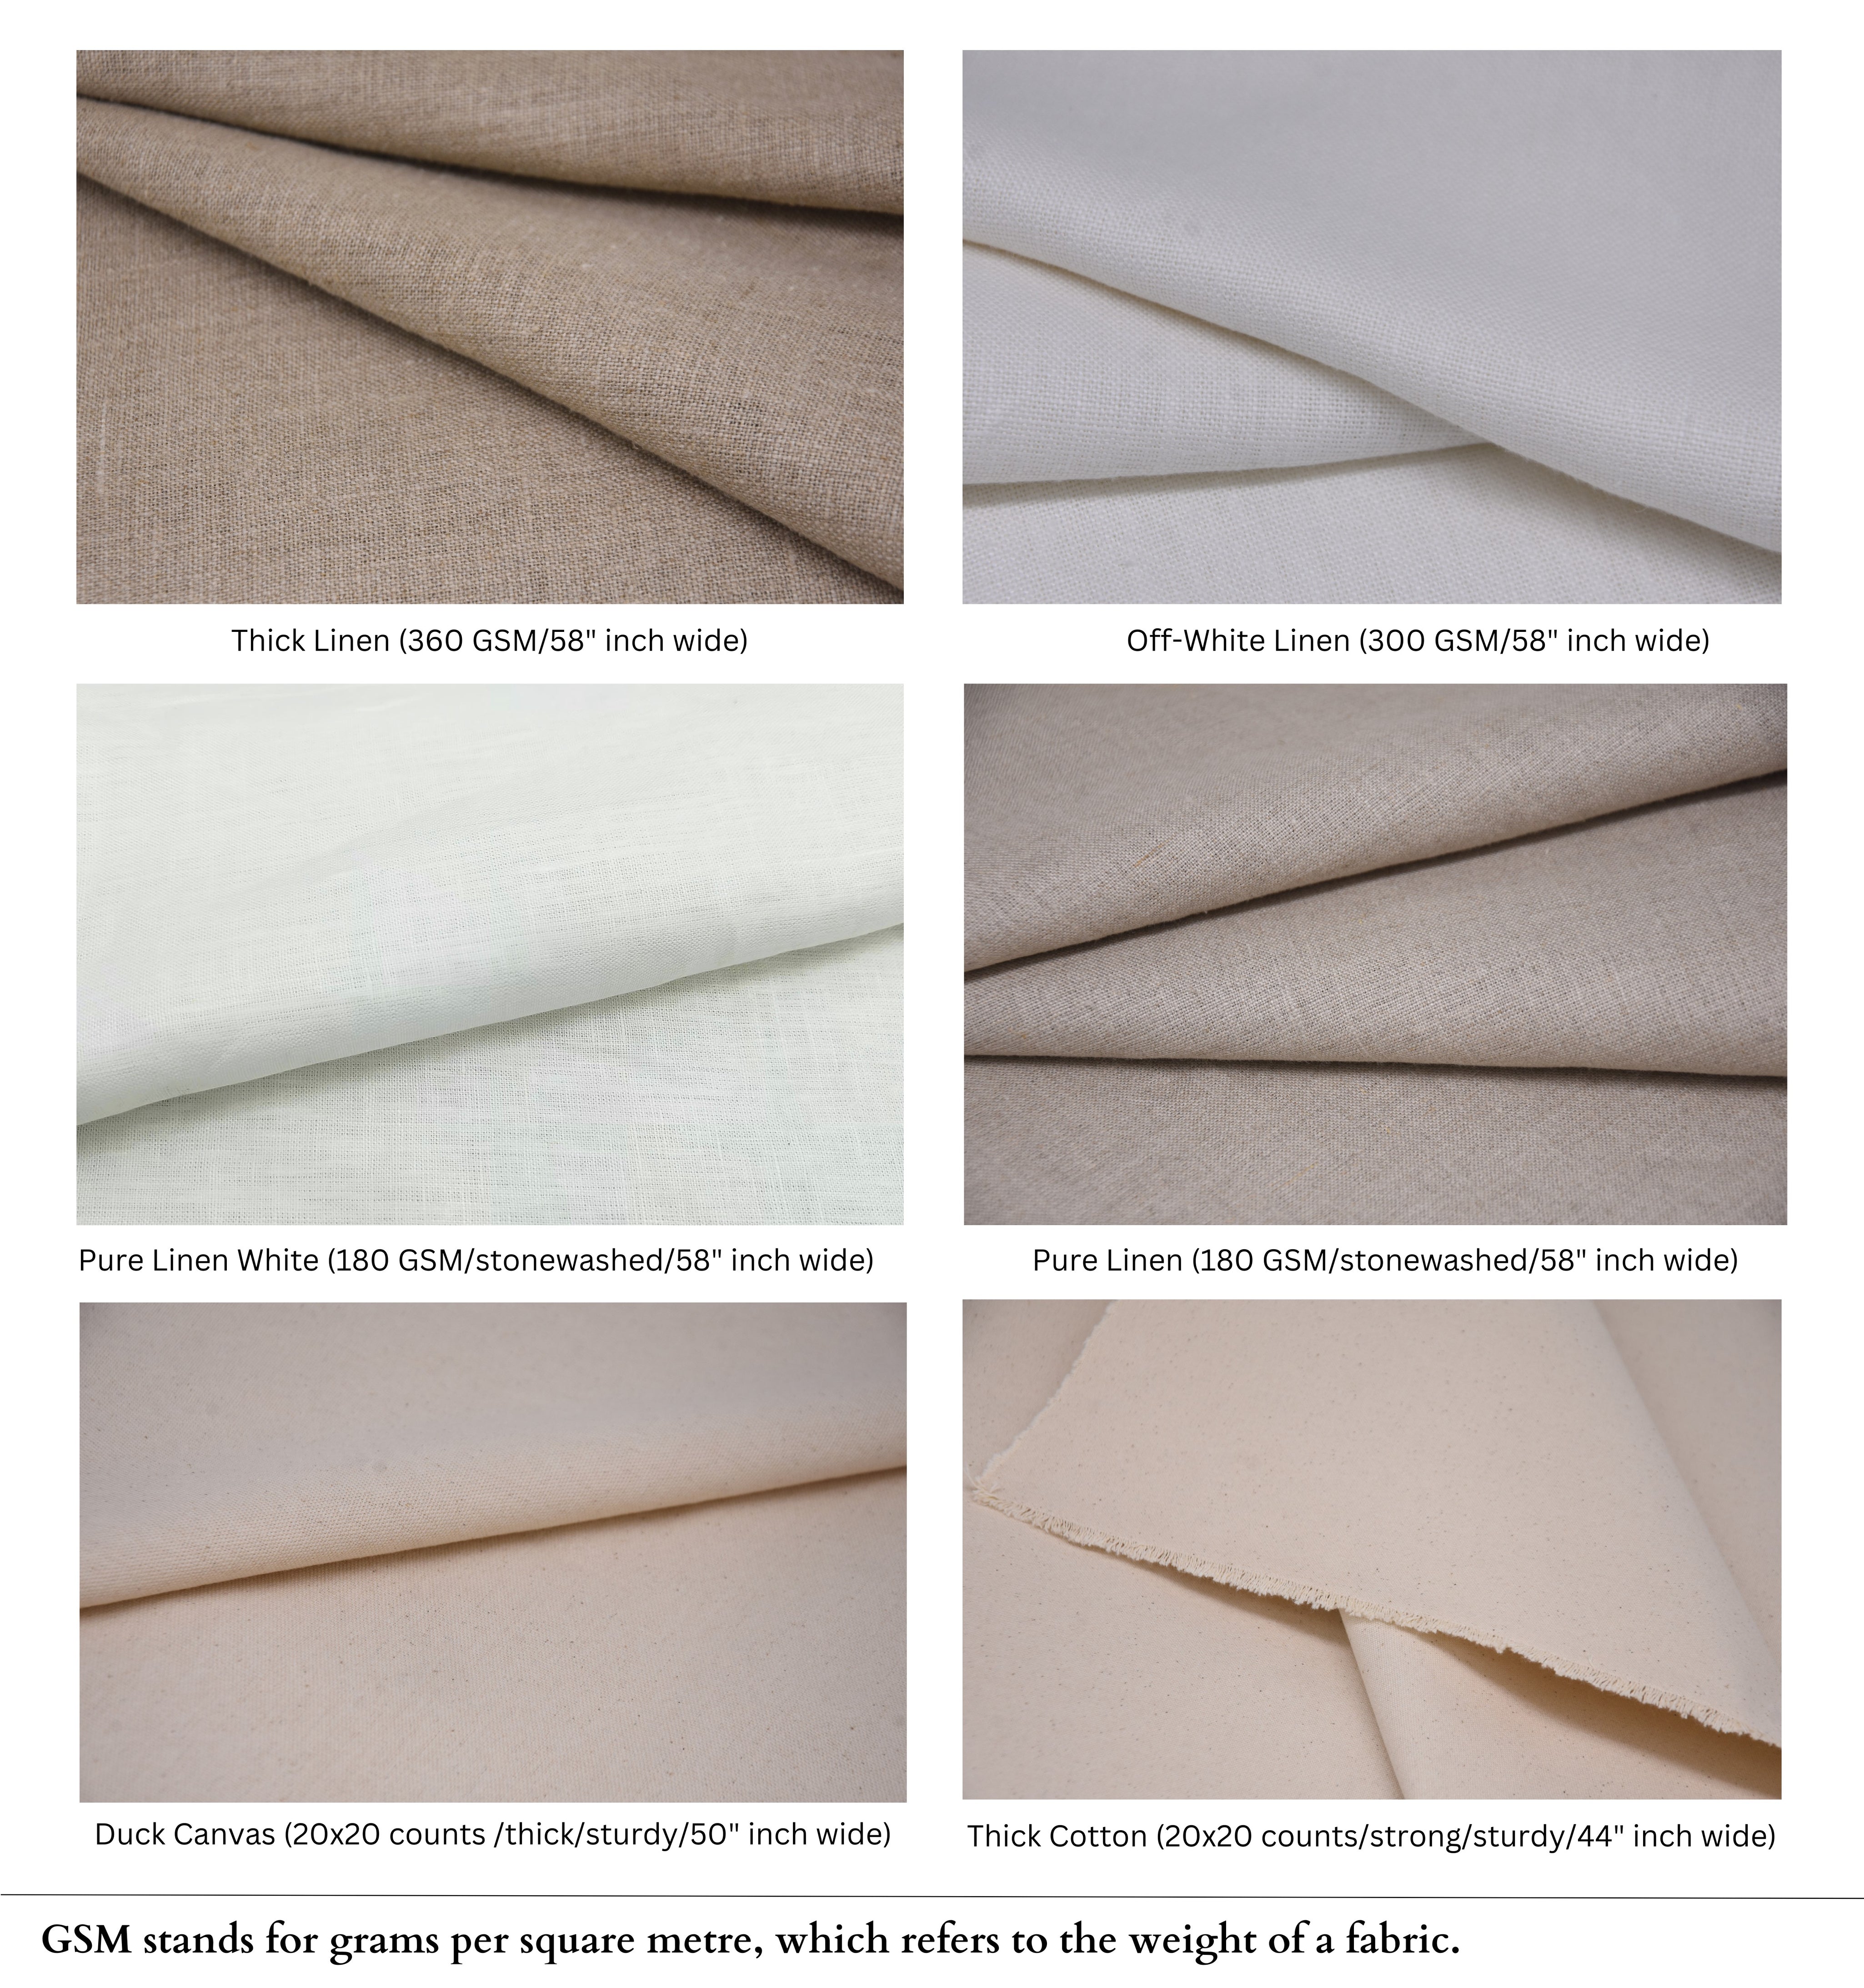 Block Print Linen Fabric, Rakhiphool  Hand Block Printed Fabric, Linen Fabric, Indian Fabric, Fabric By Yard, Block Printed Linen Pillow Covers